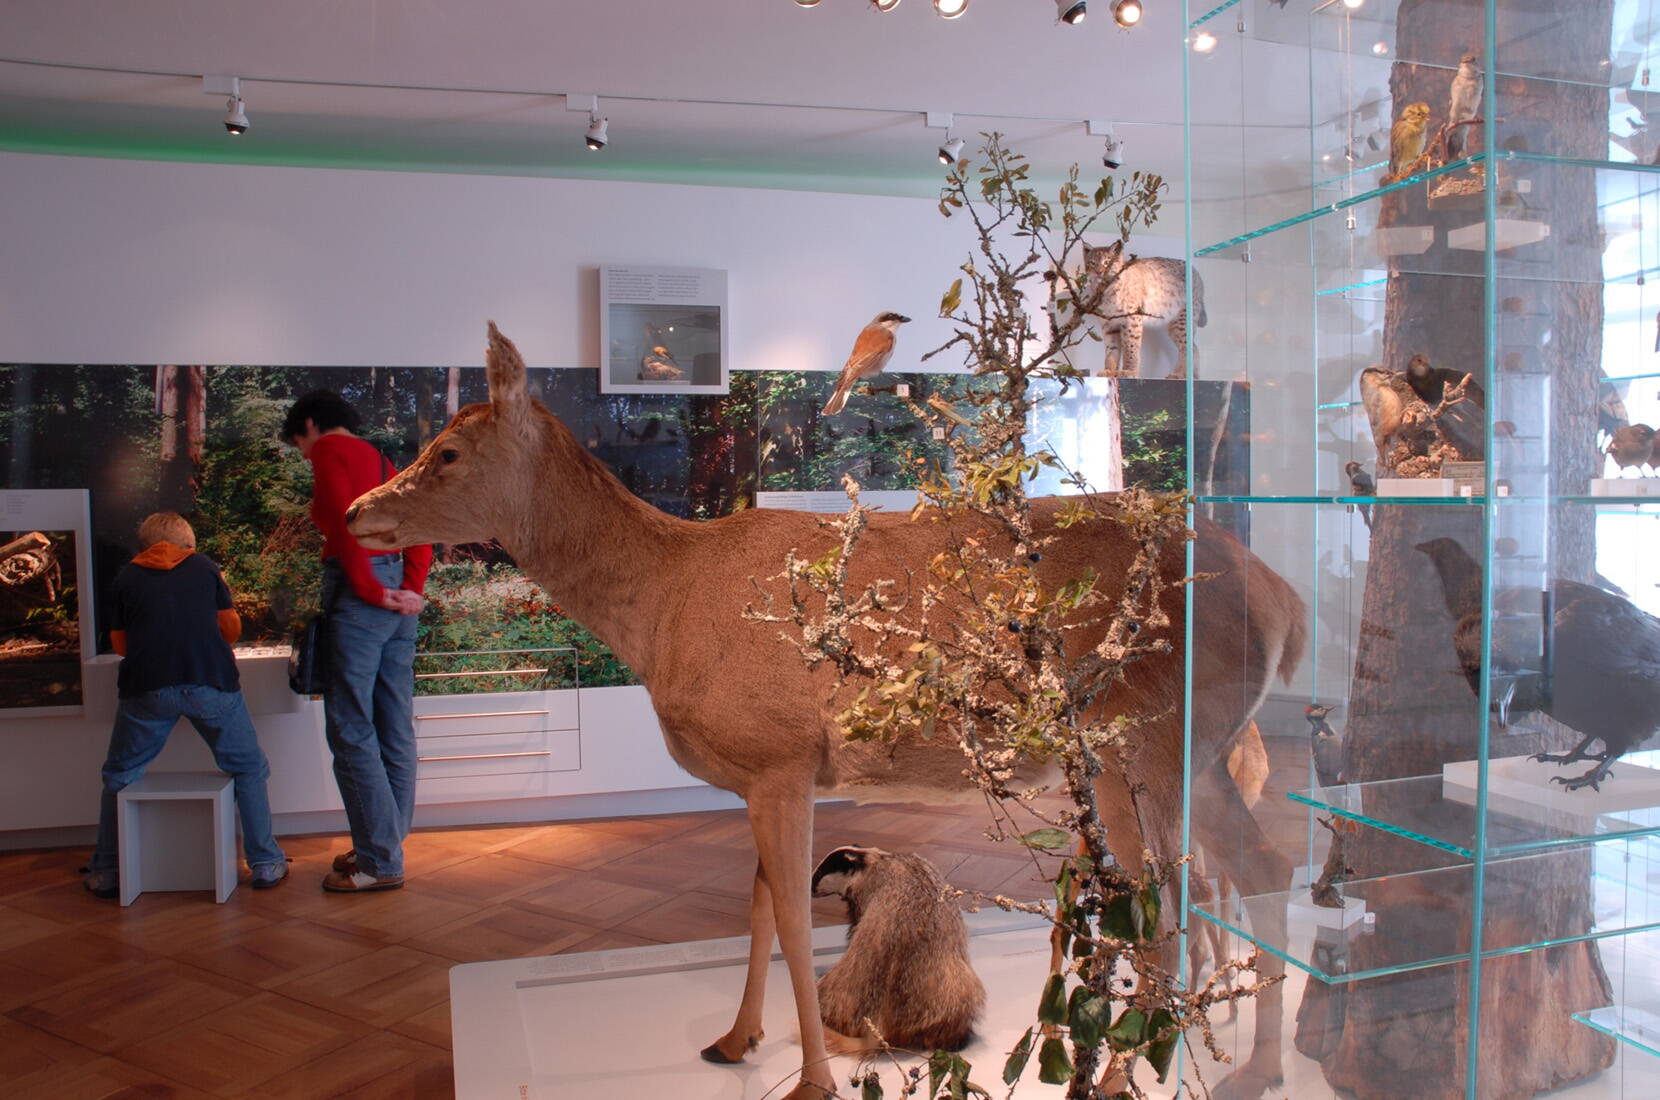 Familienausflug Historisches Museum Thurgau. In lebensechten Darstellungen sind viele einheimische Pflanzen und Tiere zu entdecken. Fossilien lassen längst vergangene Zeiten lebendig werden.